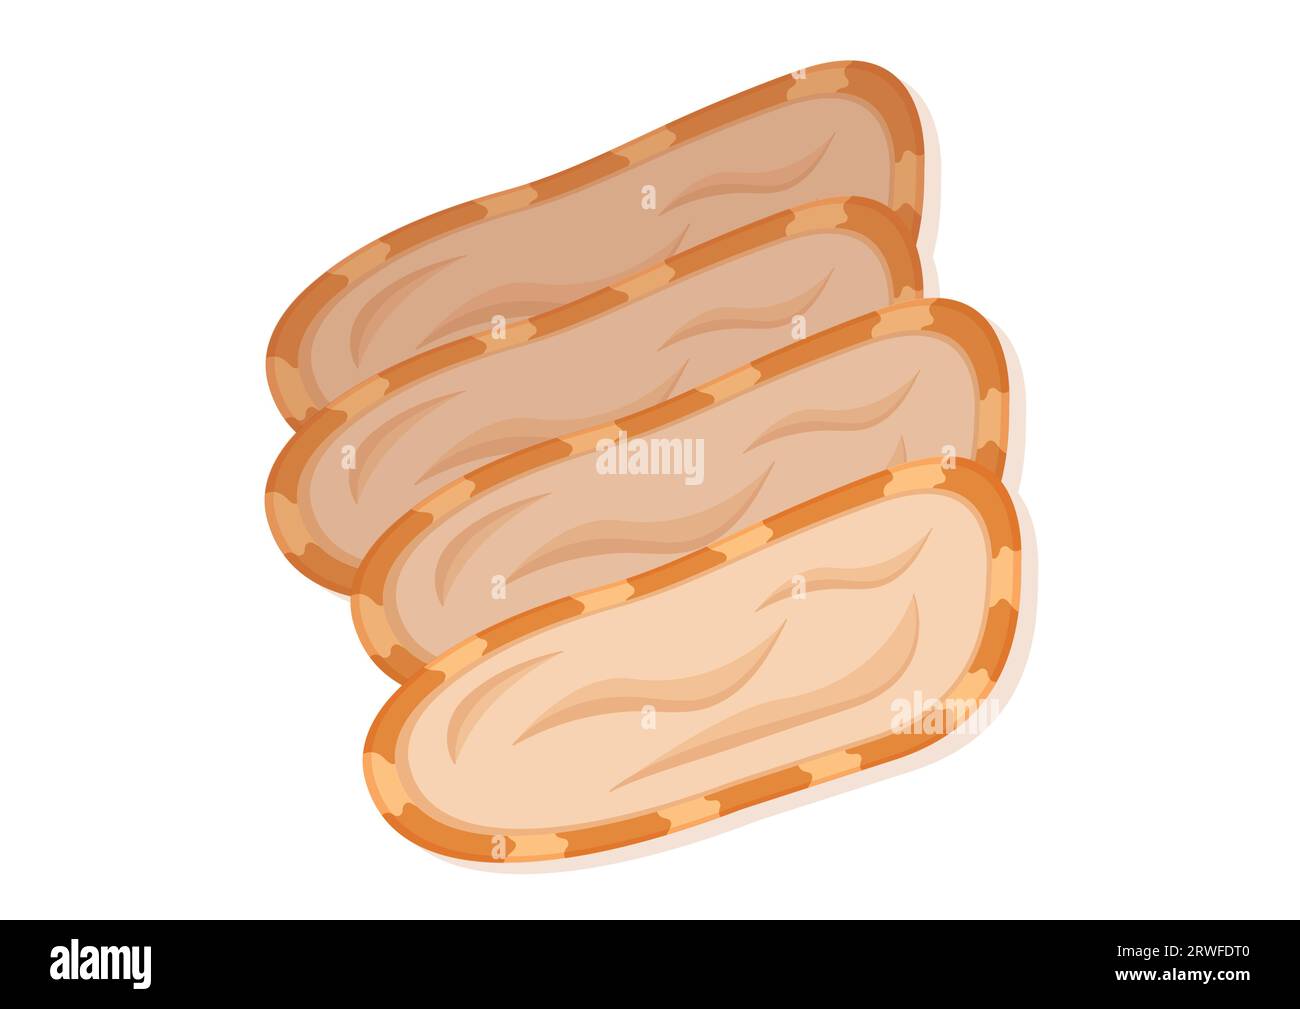 Morceaux de poulet bouilli Vector Flat Design isolé sur fond blanc Illustration de Vecteur